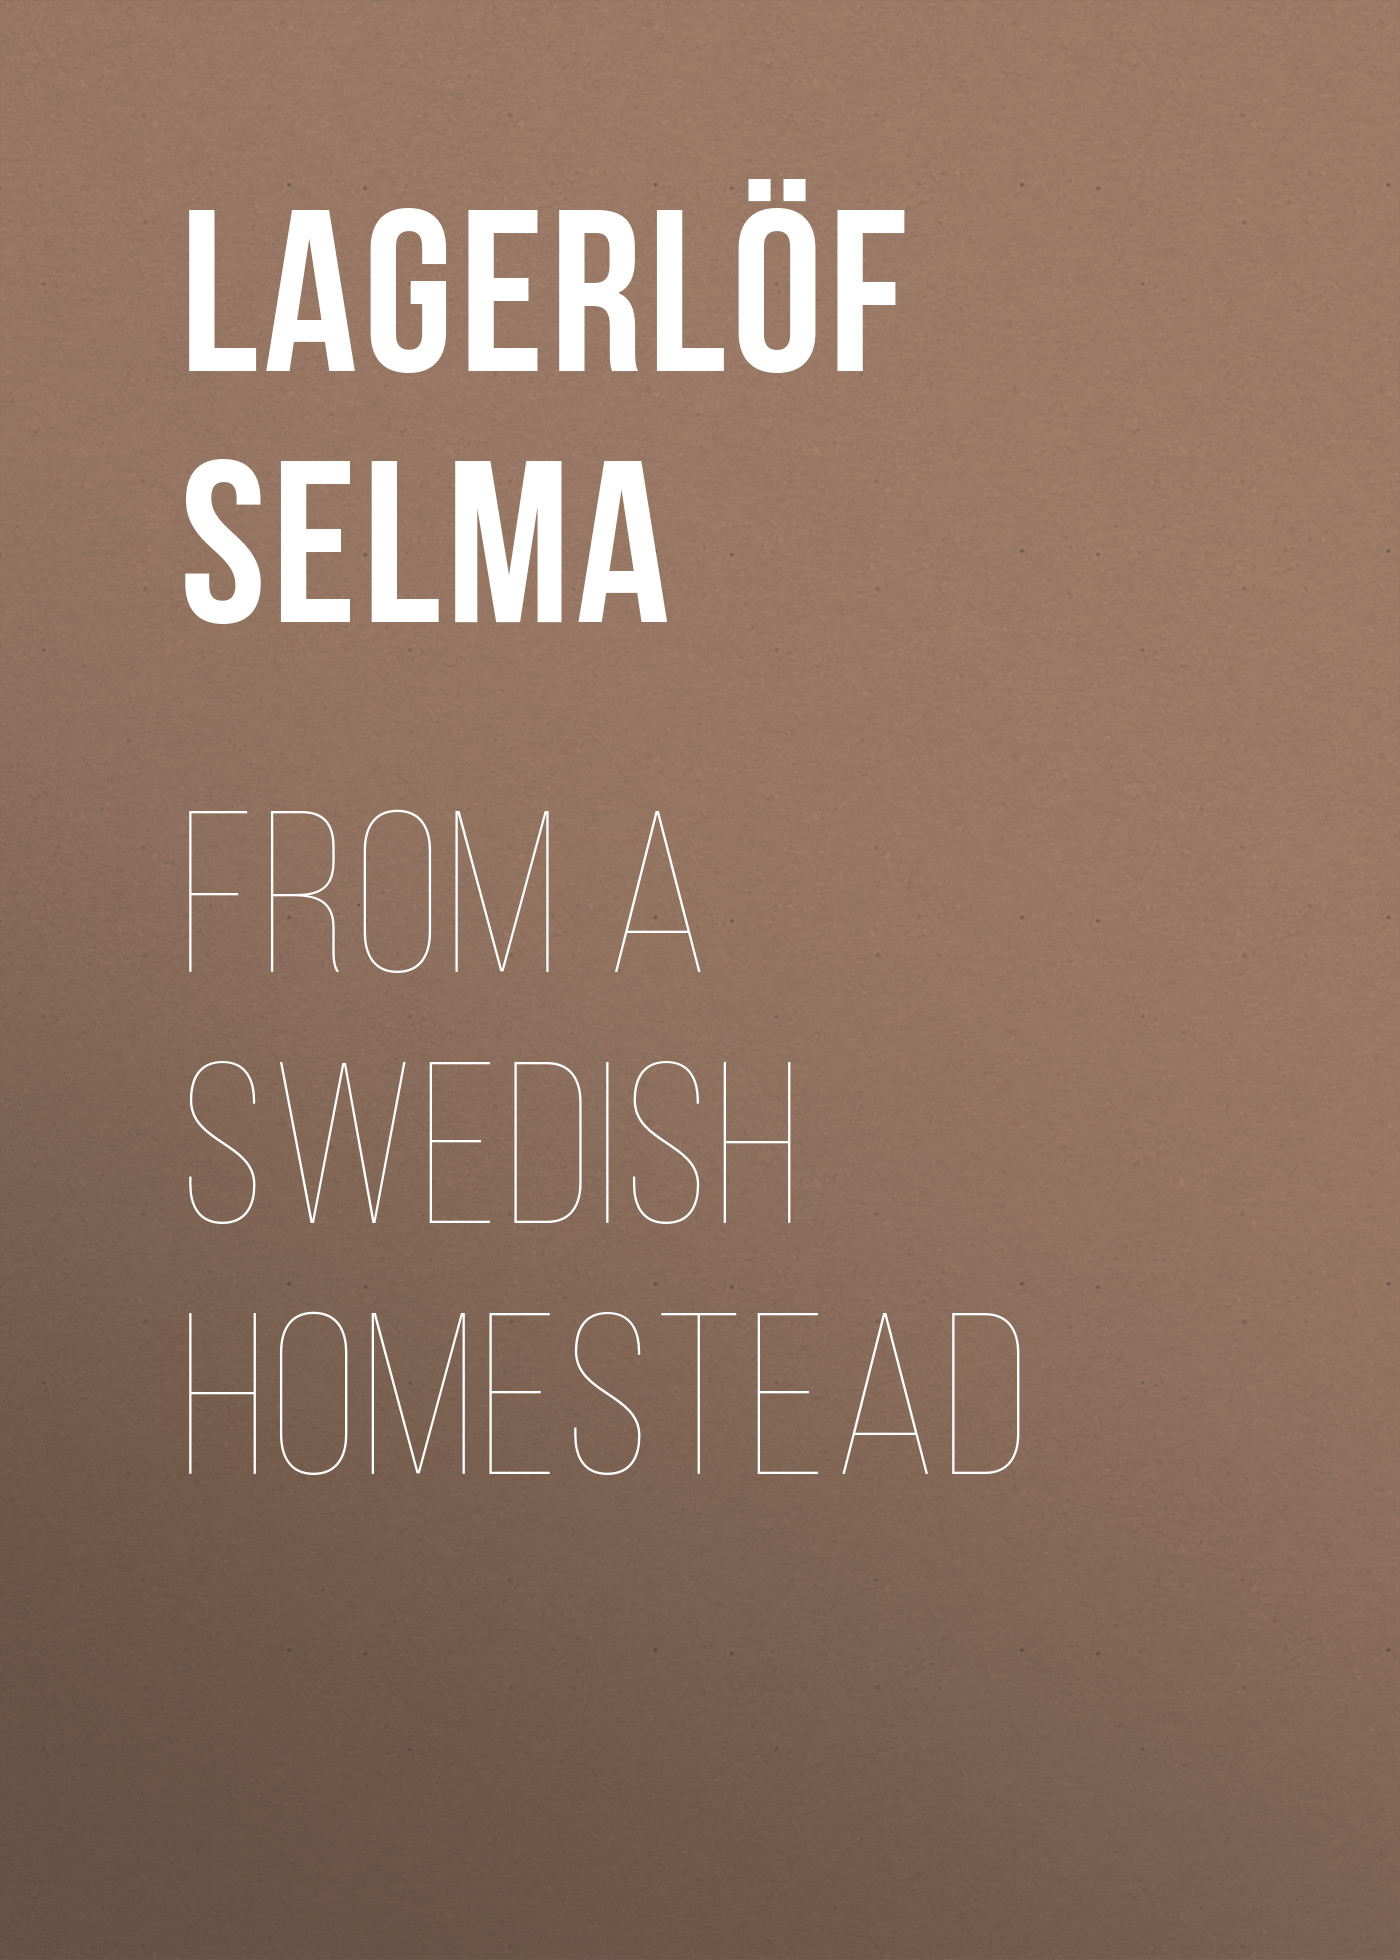 Книга From a Swedish Homestead из серии , созданная Selma Lagerlöf, может относится к жанру Зарубежная старинная литература, Зарубежная классика. Стоимость электронной книги From a Swedish Homestead с идентификатором 25228996 составляет 0 руб.